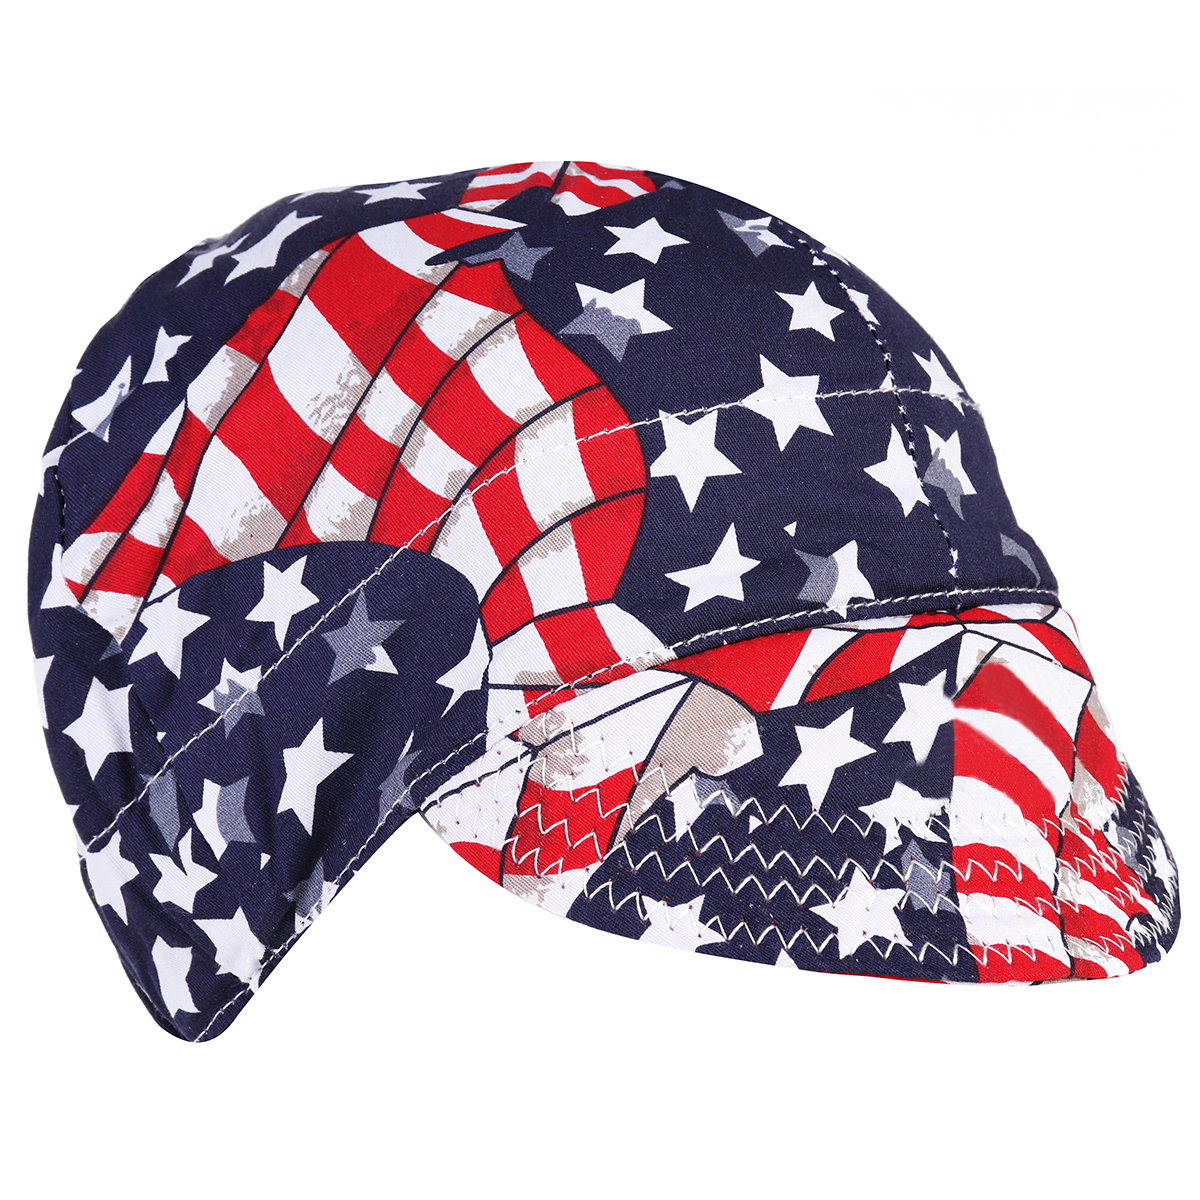 Welding-Cap-Protective-Cotton-Hat-Cap-Welding-Helmet-Hood-Tool-Sweat-Absorption-1321885-5